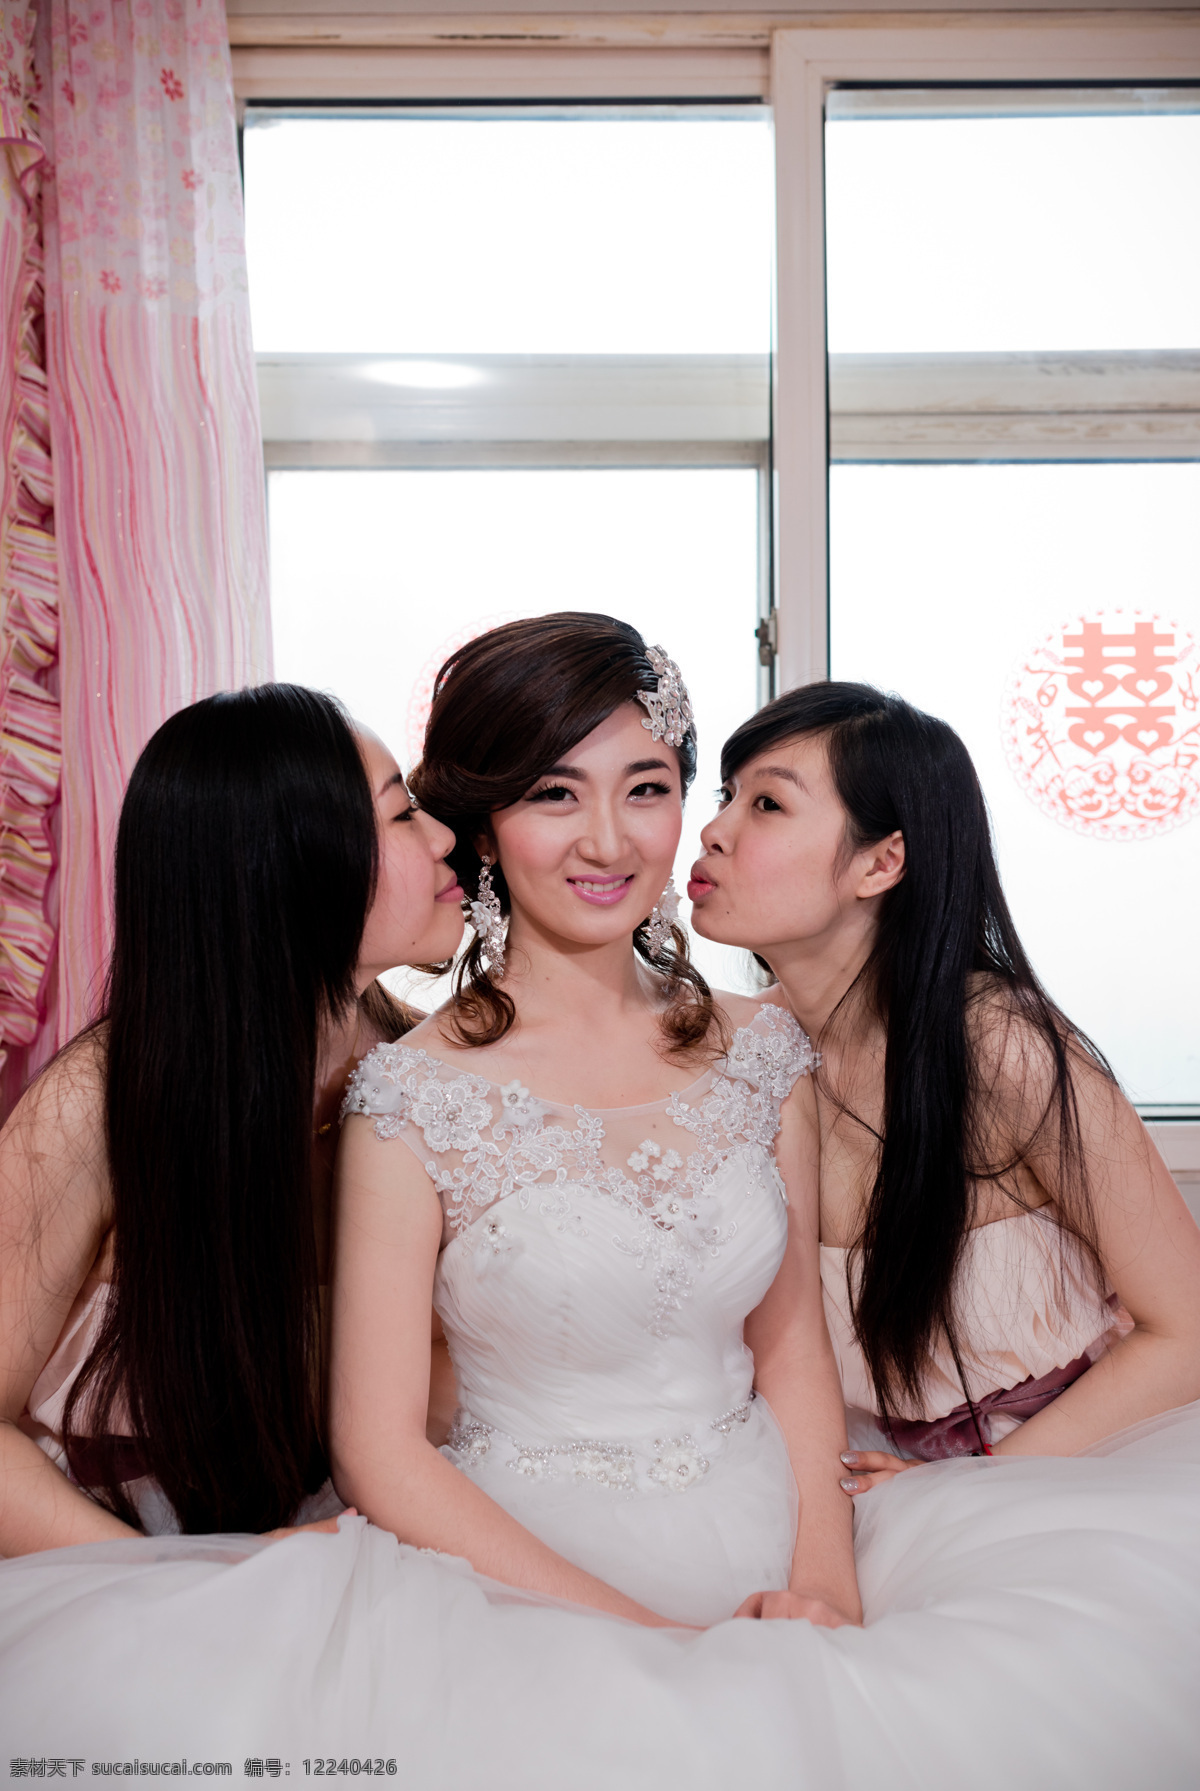 结婚 新娘 伴娘 甜蜜 闺蜜 亲吻 人物图库 人物摄影